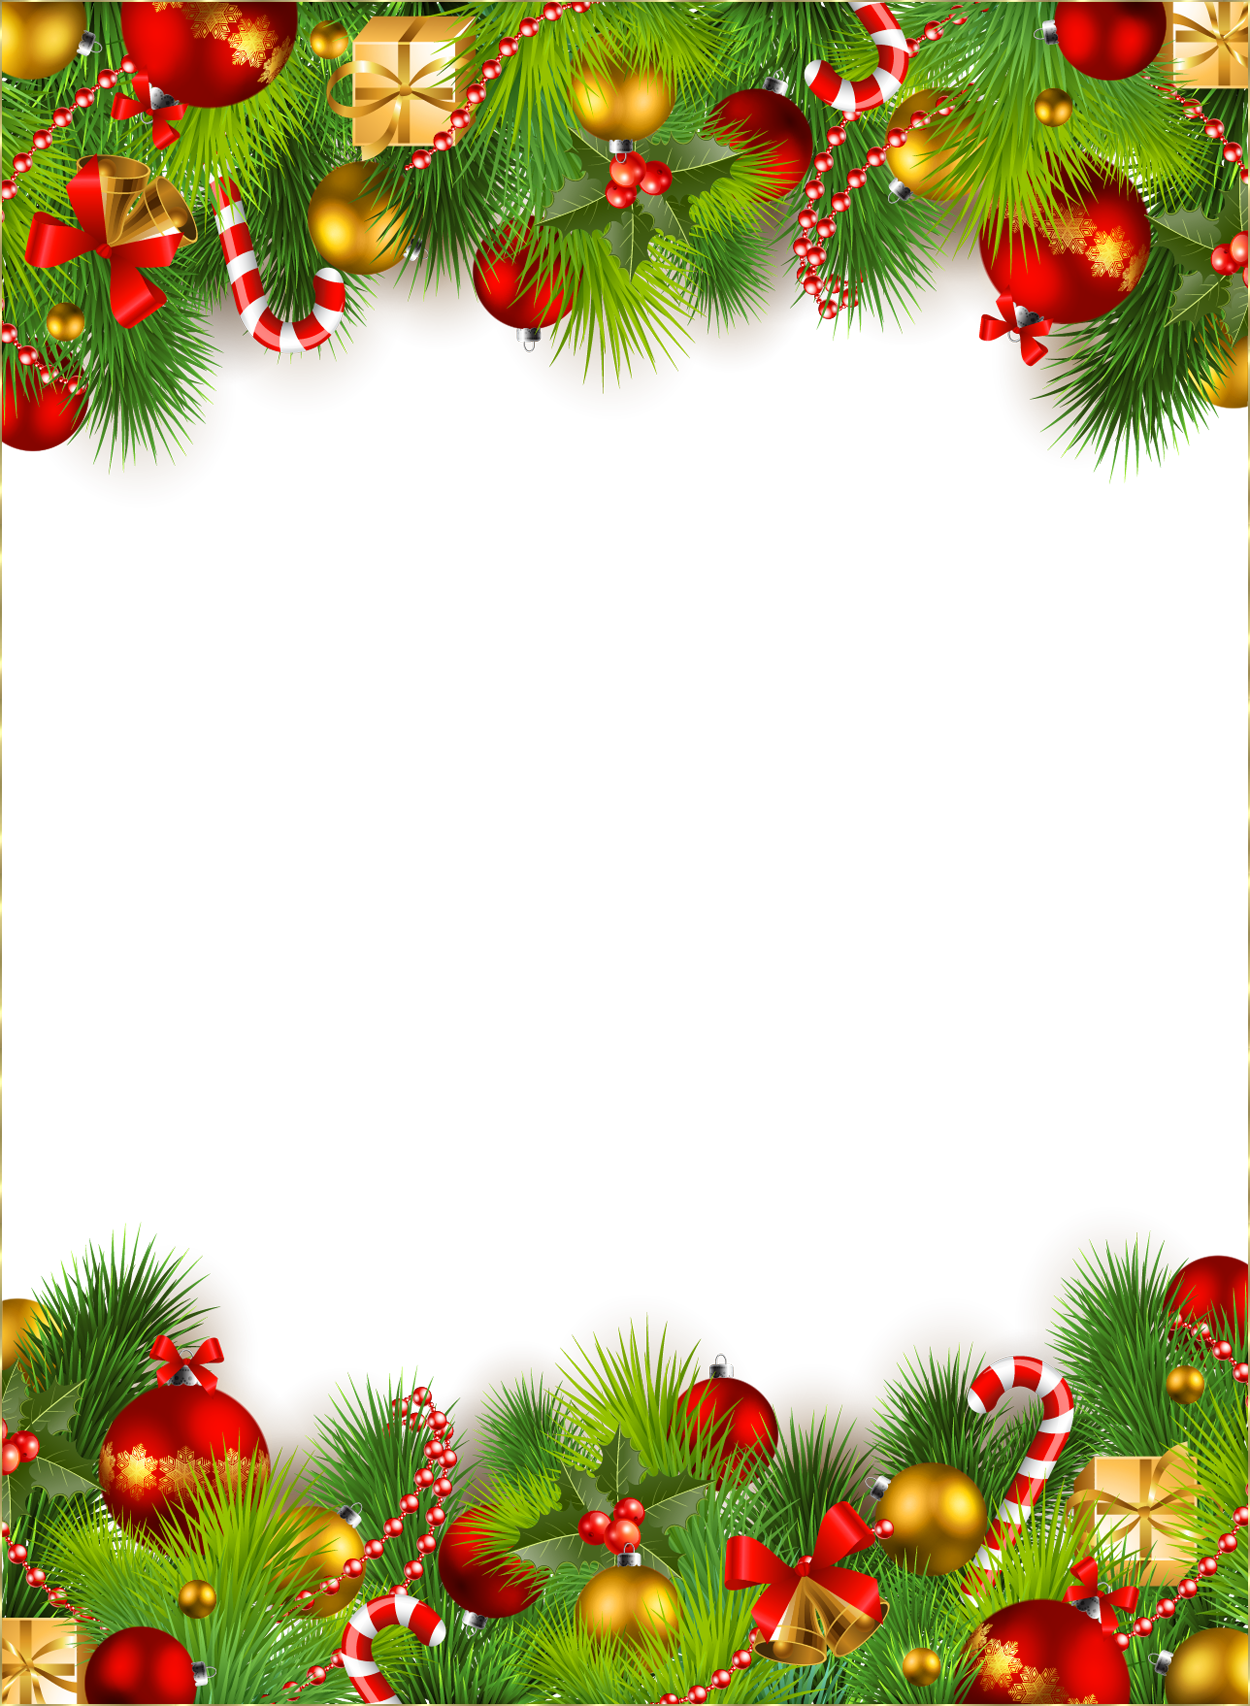 Khung Giáng Sinh PNG là một lựa chọn hợp lý để trang trí hình ảnh của bạn trong mùa đông này. Với nền trong suốt, bạn có thể dễ dàng tạo ra các thiết kế độc đáo của riêng mình. Tải Miễn Phí ngay để trải nghiệm không gian Giáng sinh ấm áp và thú vị!